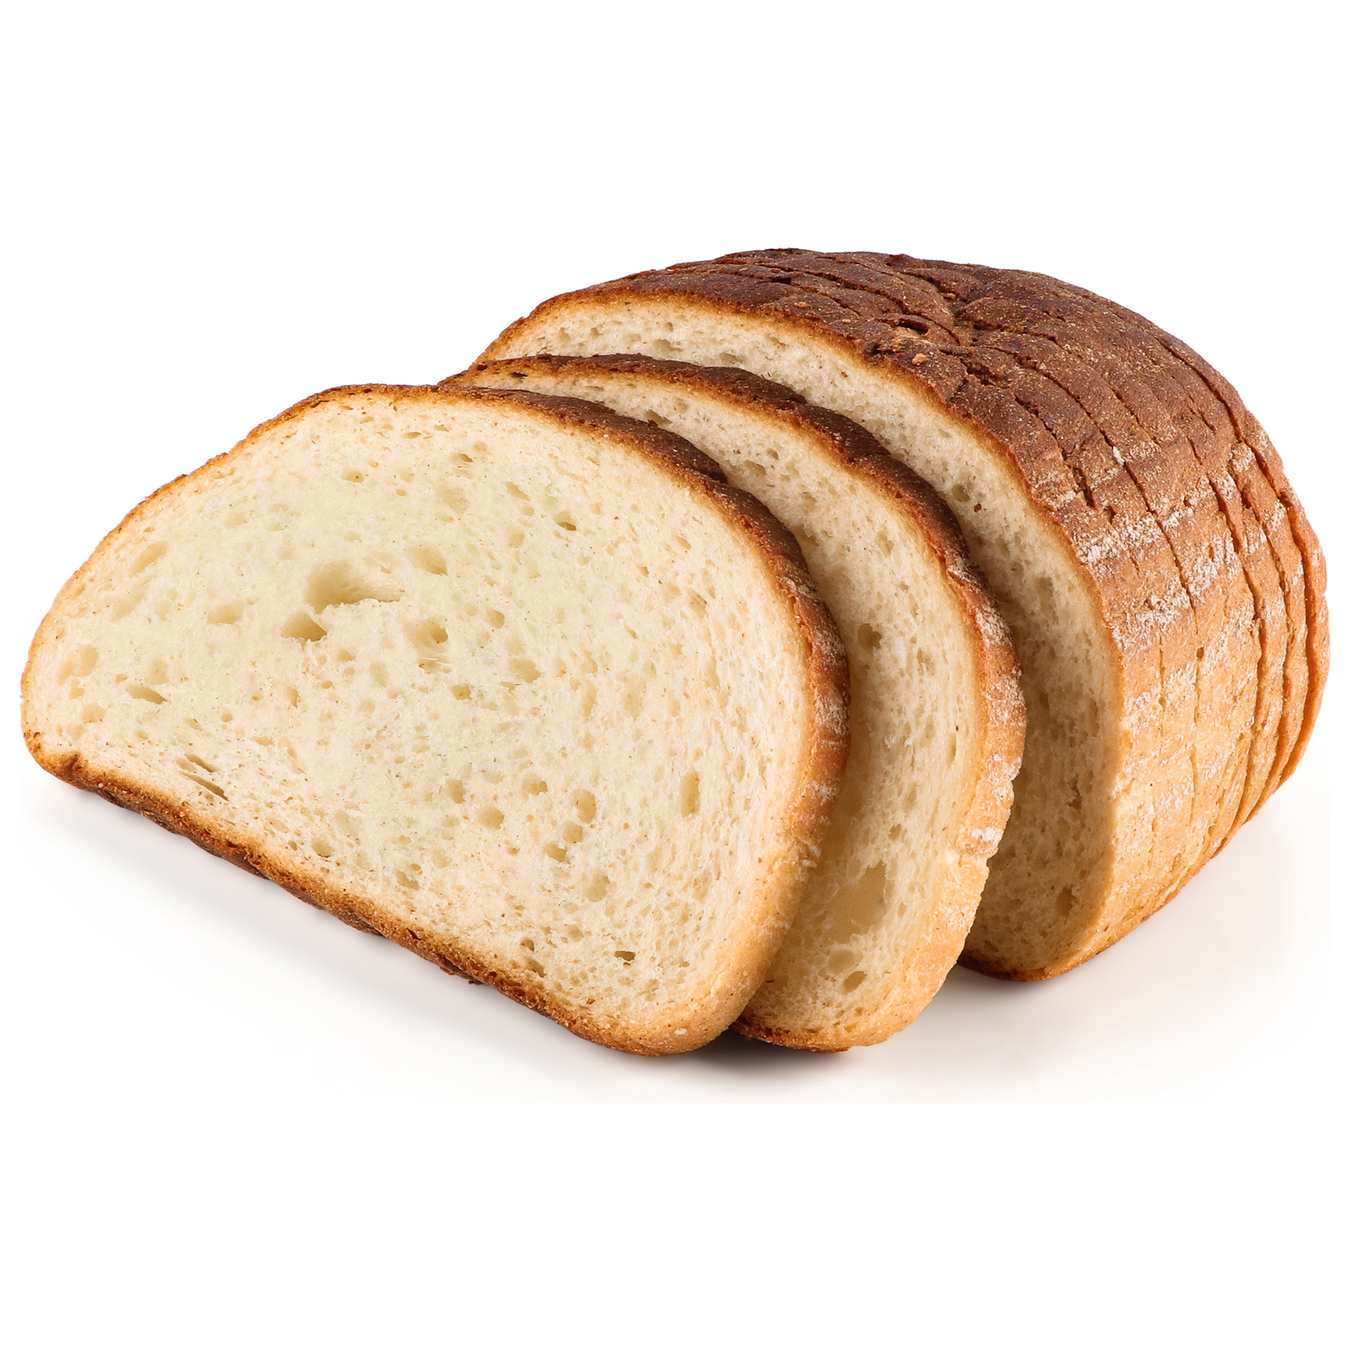 Хлеб Царь-Хлеб пшеничный Панский половинка нарезанный ломтиками 400г 2